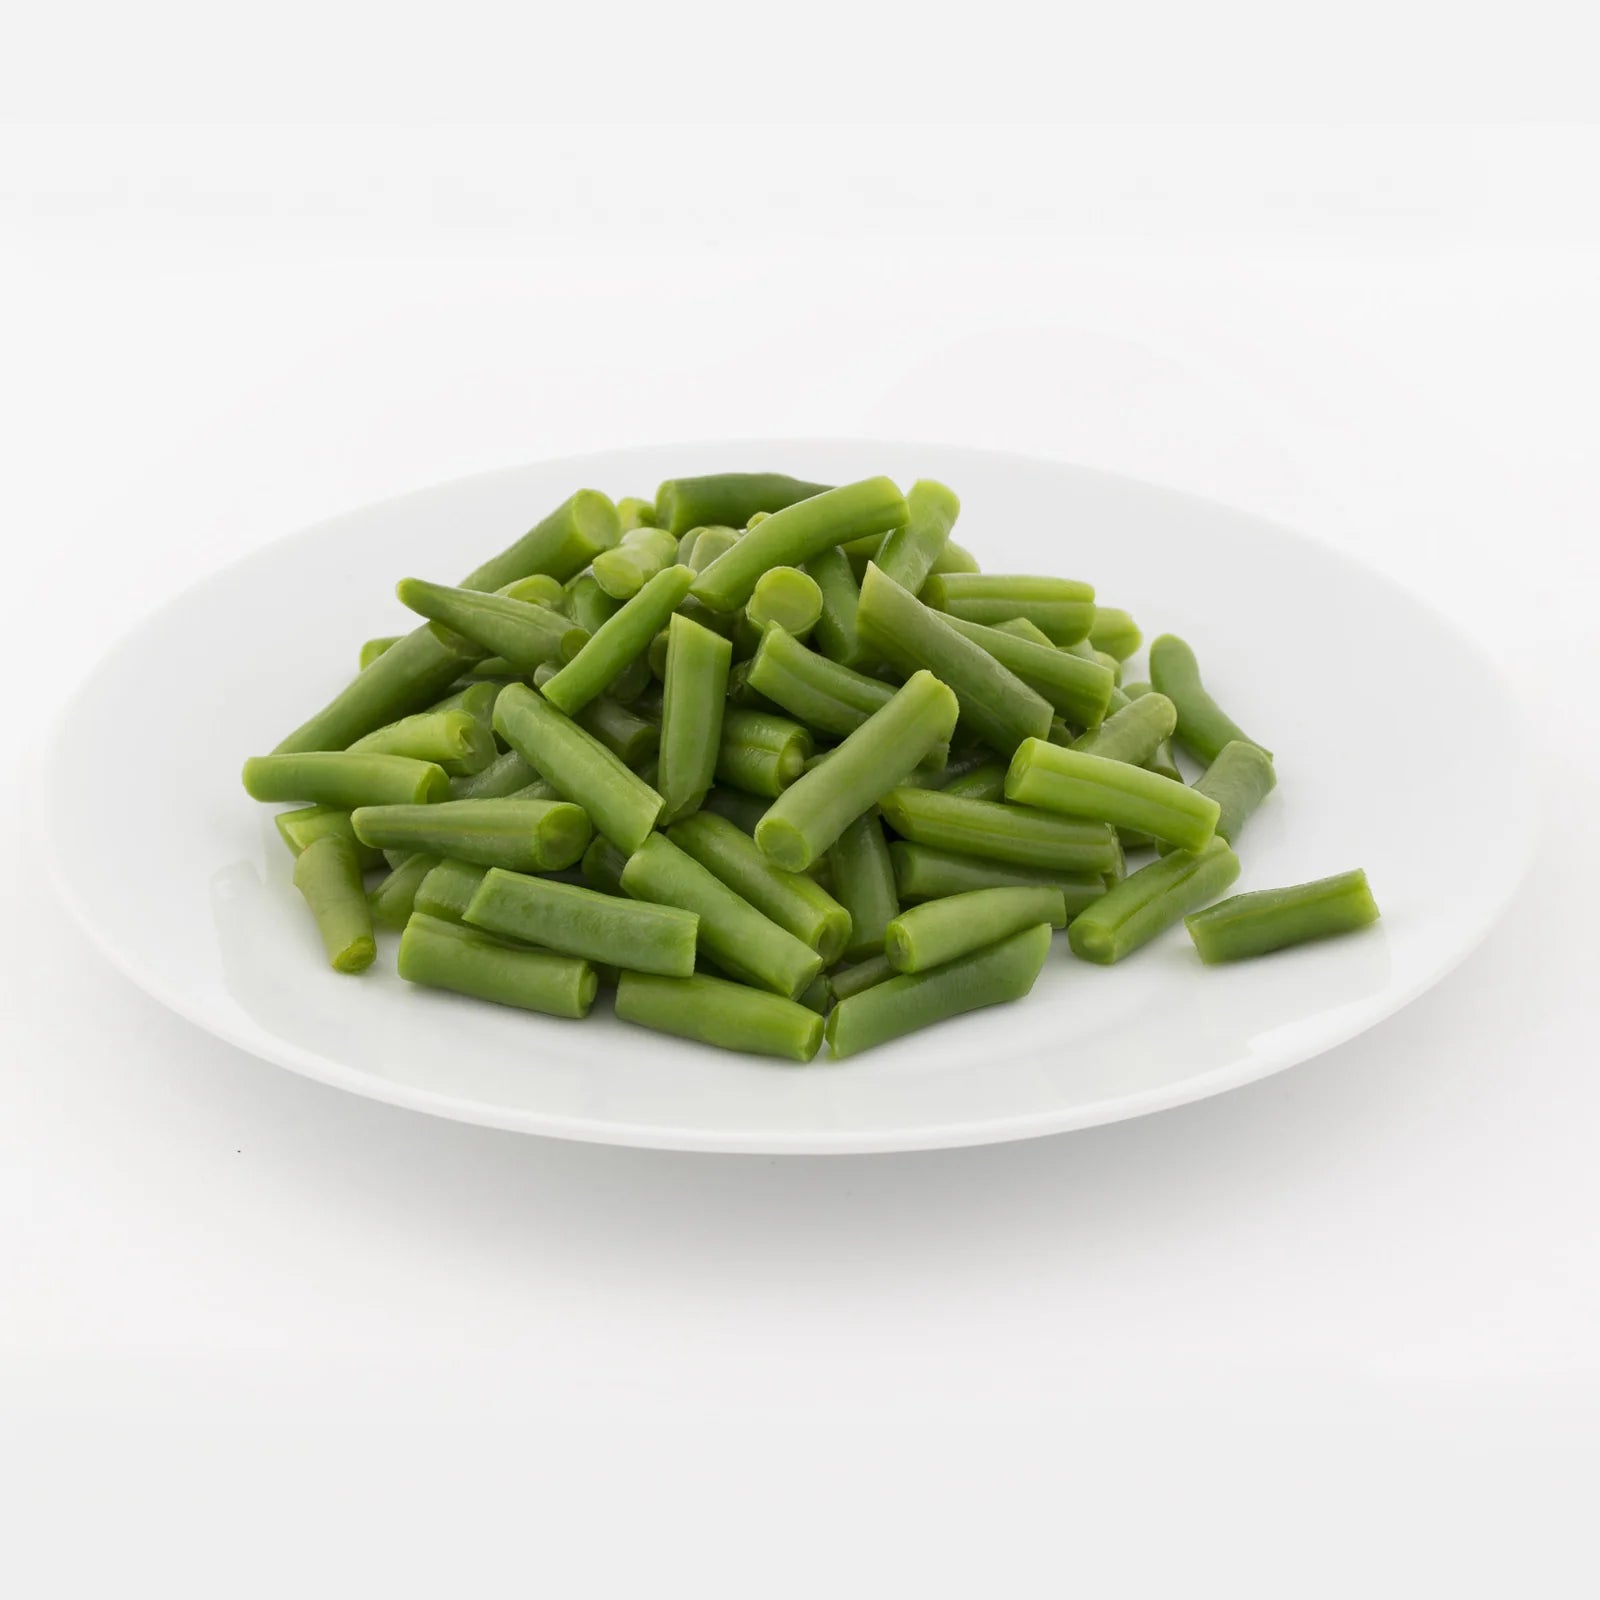 Below Zero - Cut Green Beans